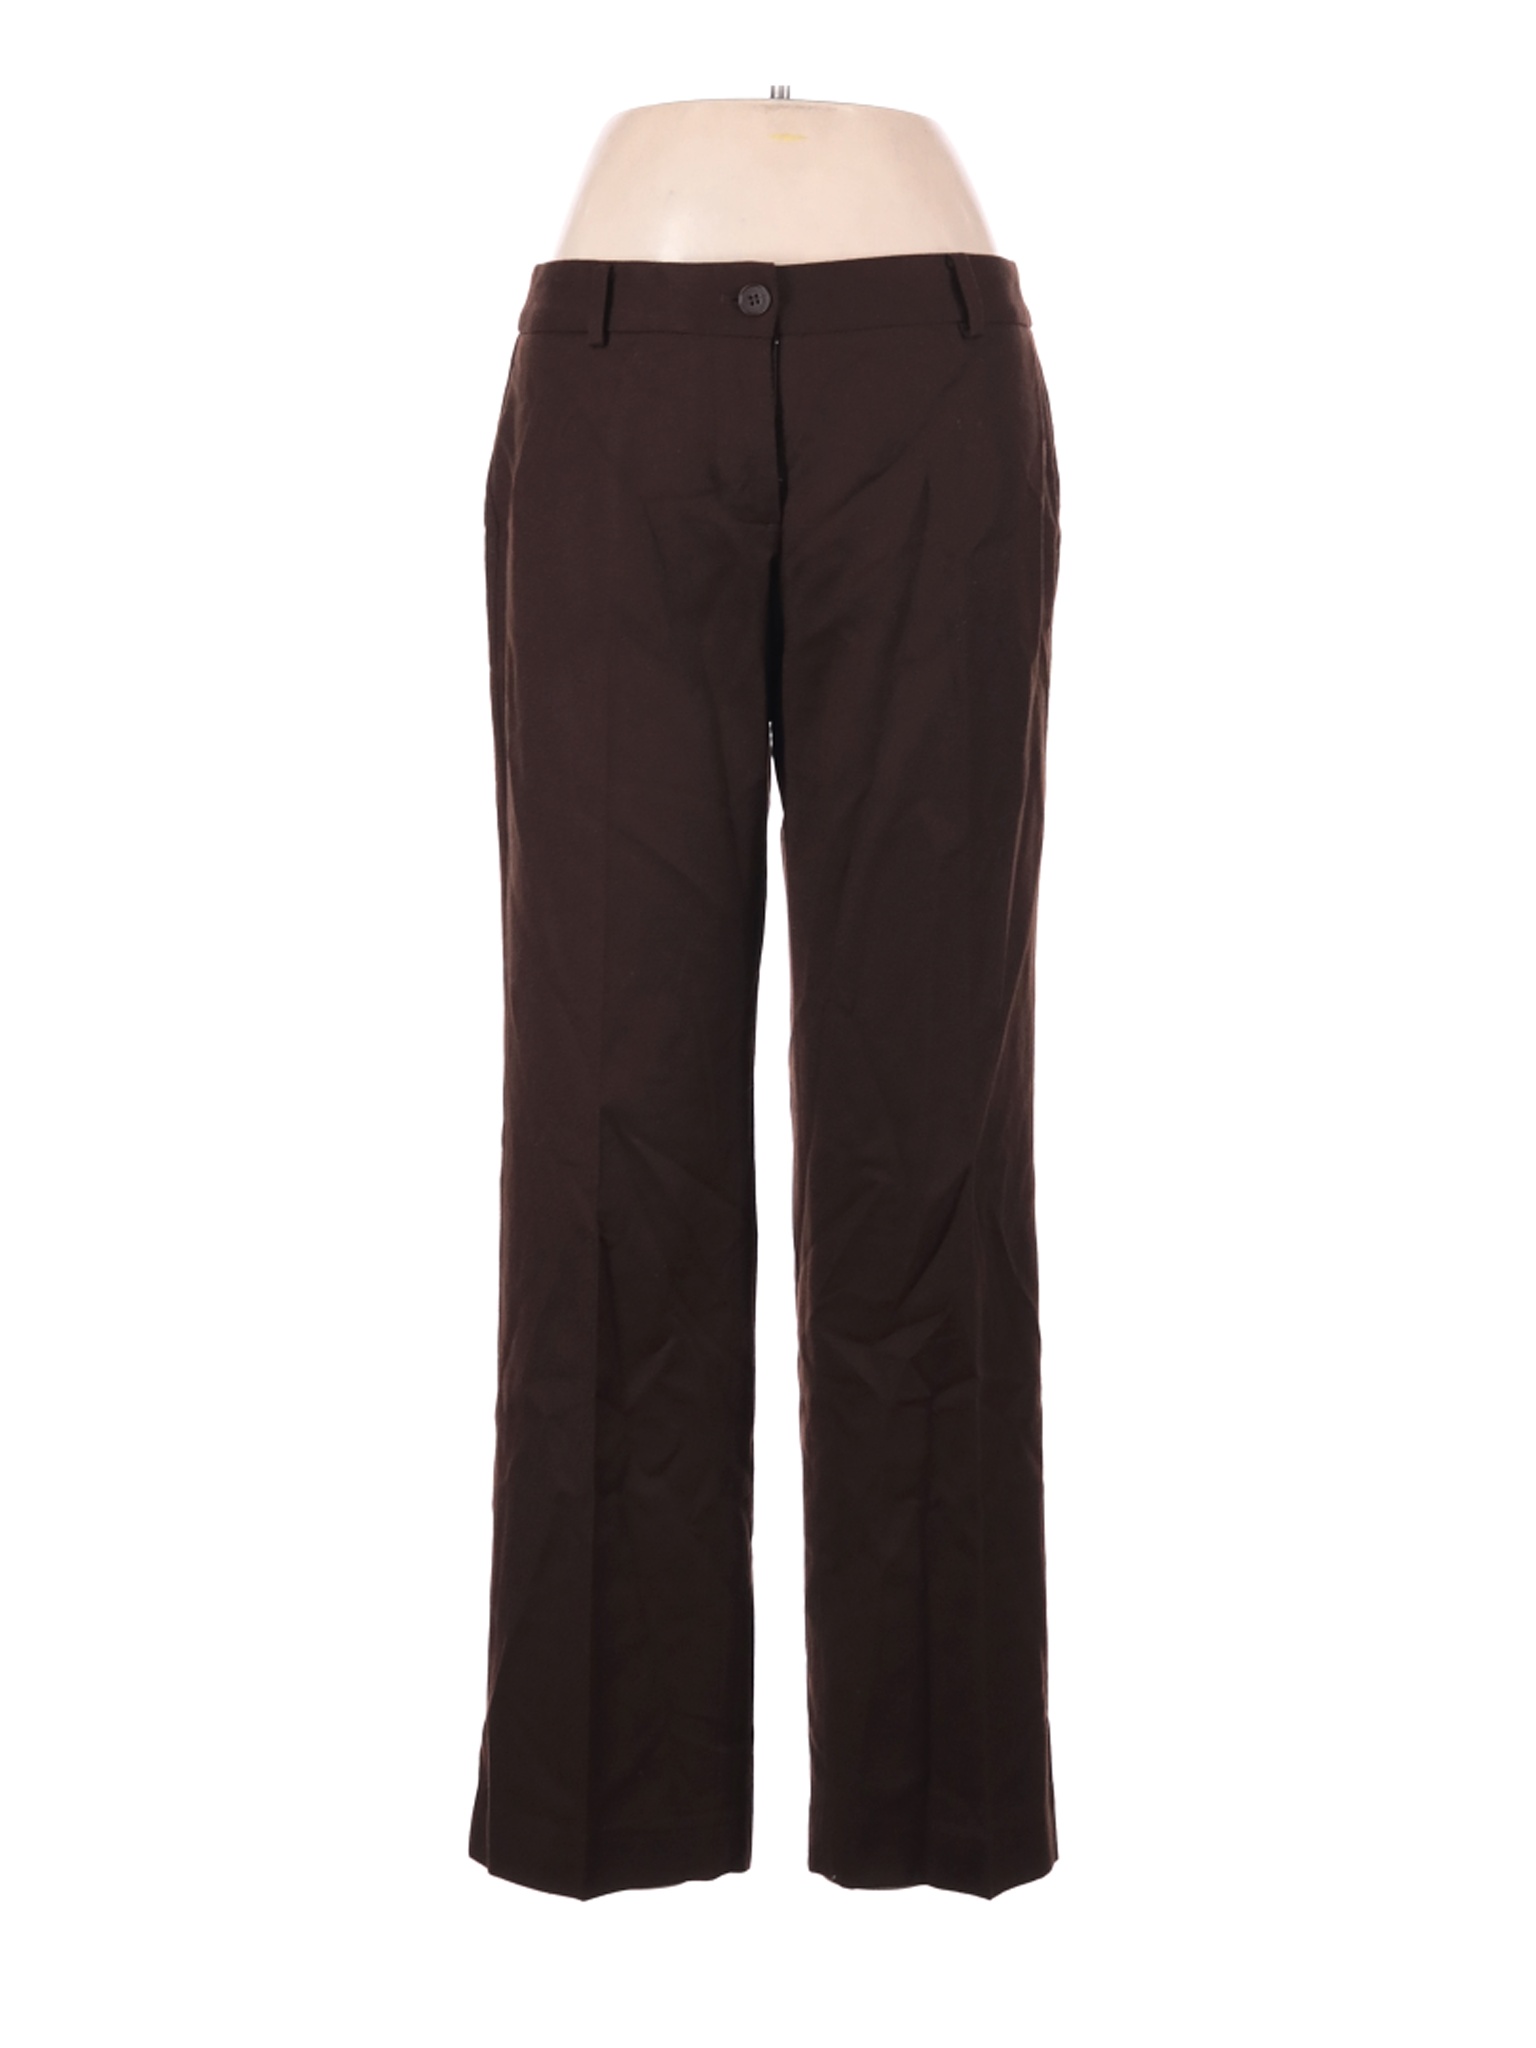 Talbots Women Brown Wool Pants 6 Petites | eBay